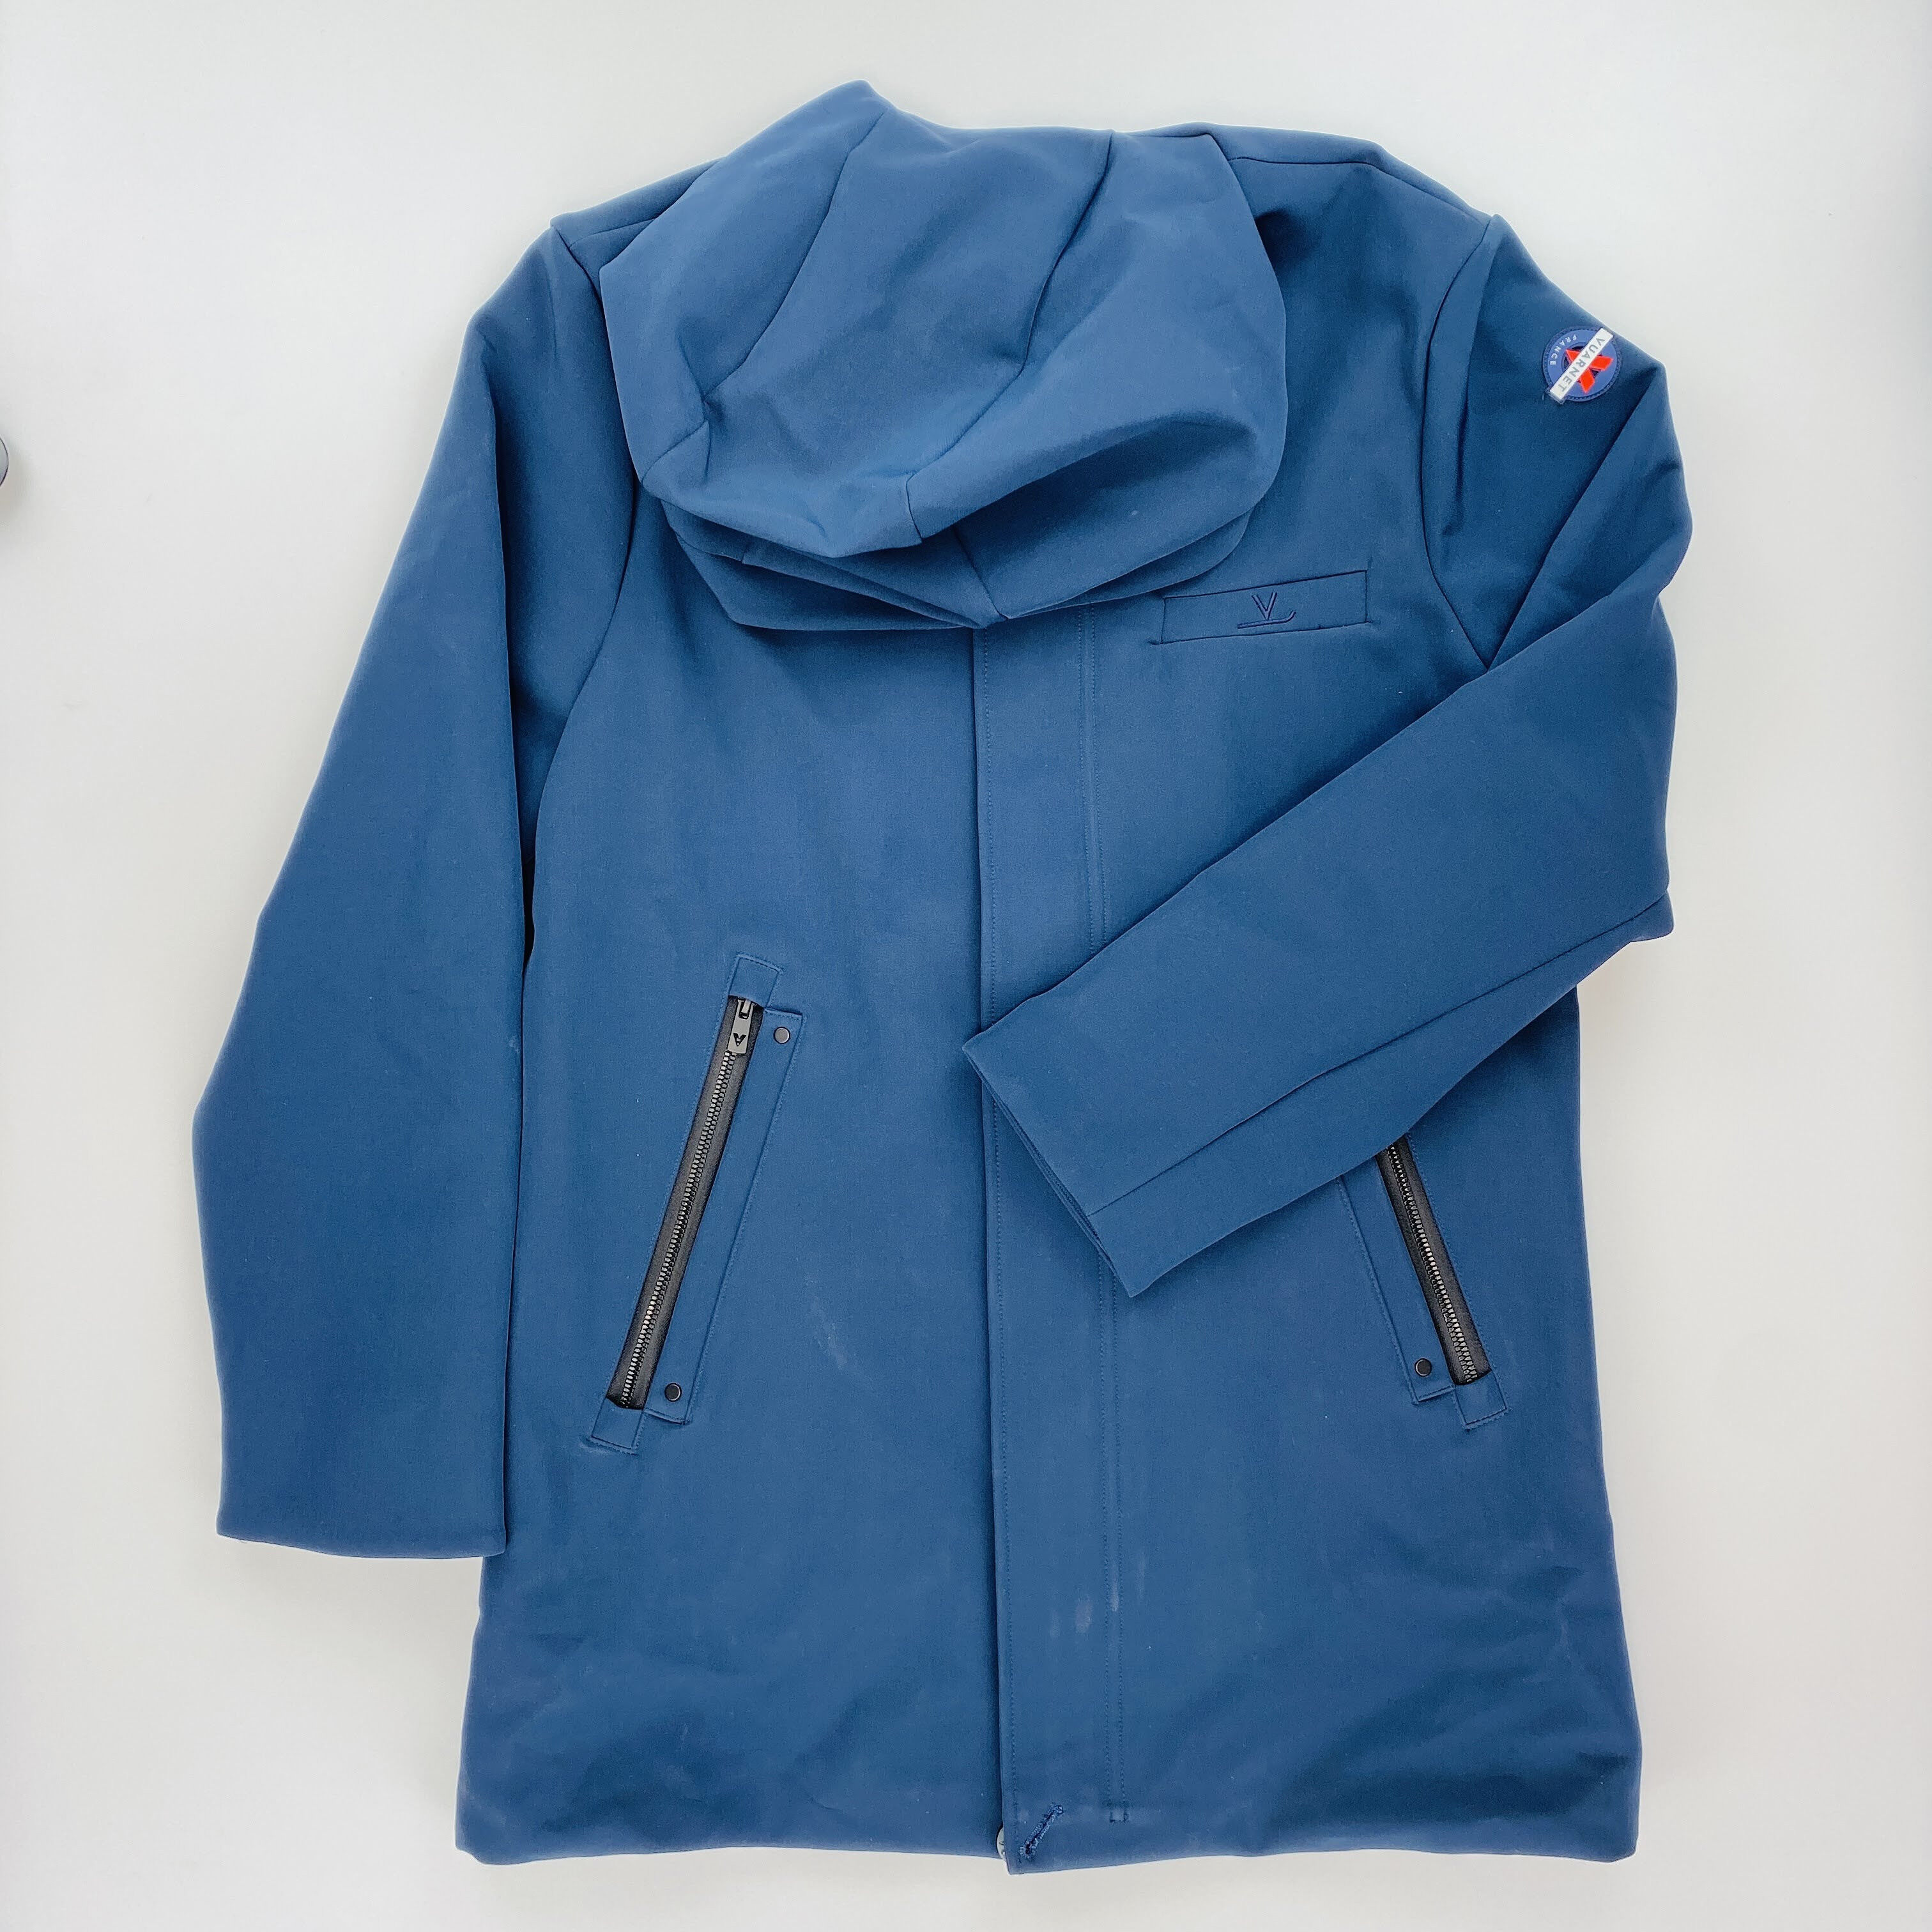 Vuarnet Kyoga Jacket - Seconde main Veste homme - Bleu pétrole - L | Hardloop